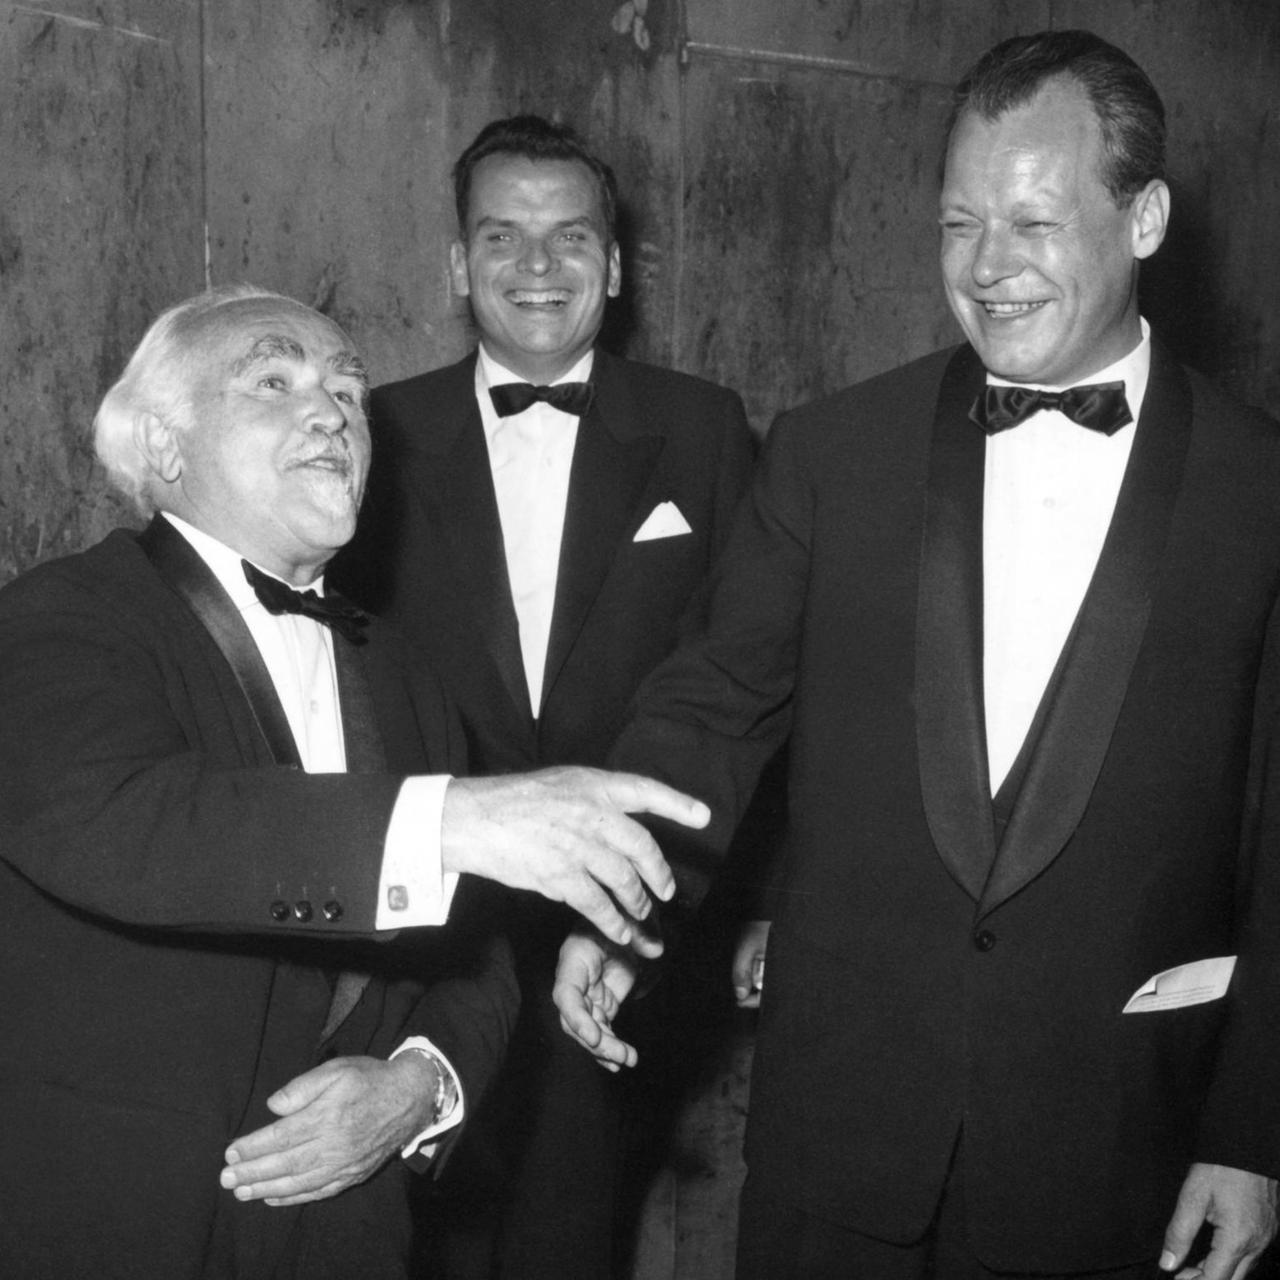 Der letzte Überlebende der drei Erfinder des Tonfilms, Dr. Hans Vogt, der Festspielleiter Dr. Alfred Bauer und der regierende Bürgermeister Willy Brandt in festlicher Garderobe bei den Filmfestspielen Berlin 1959